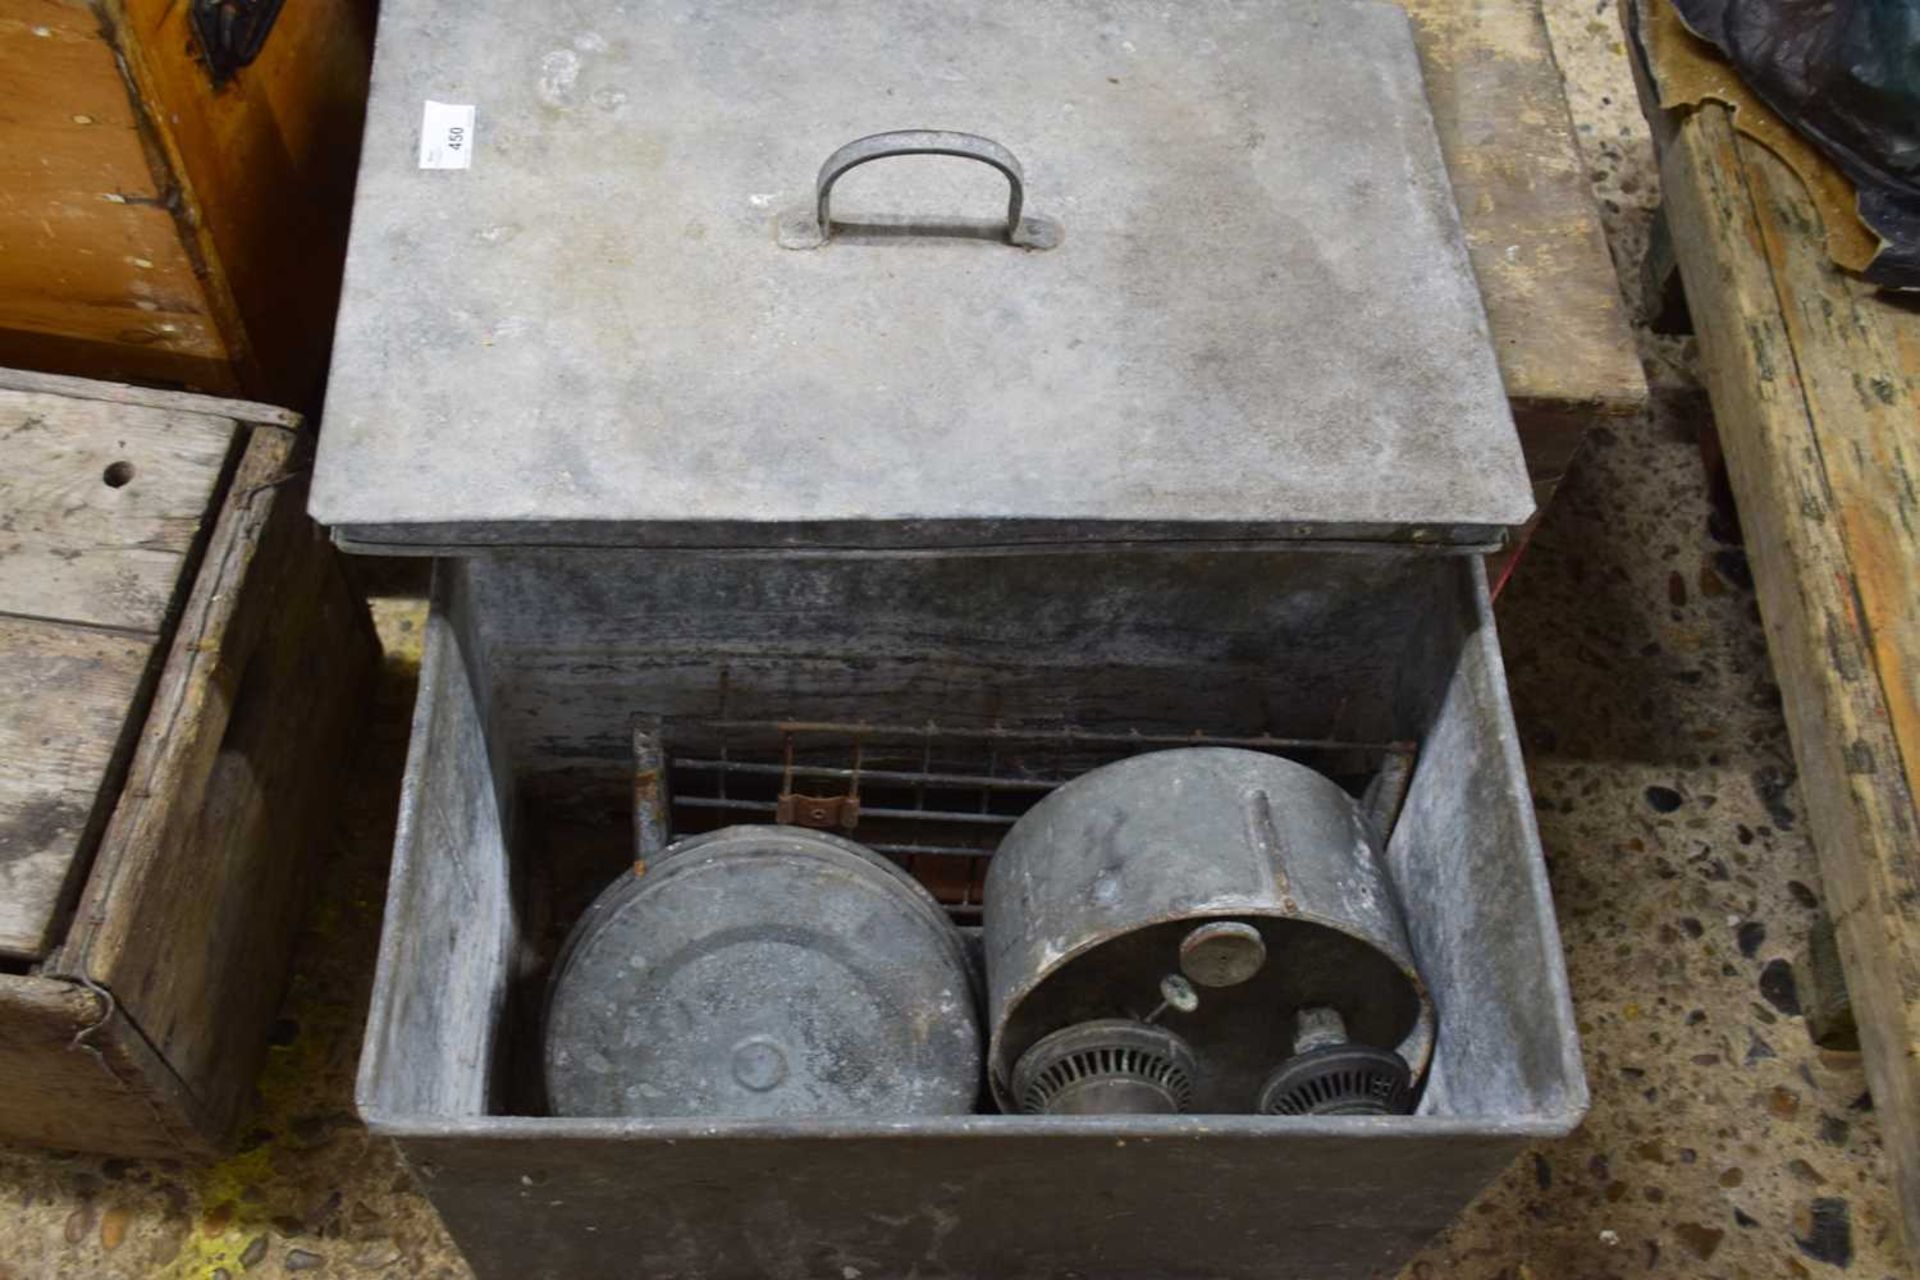 Galvanised box containing vintage paraffin heater etc